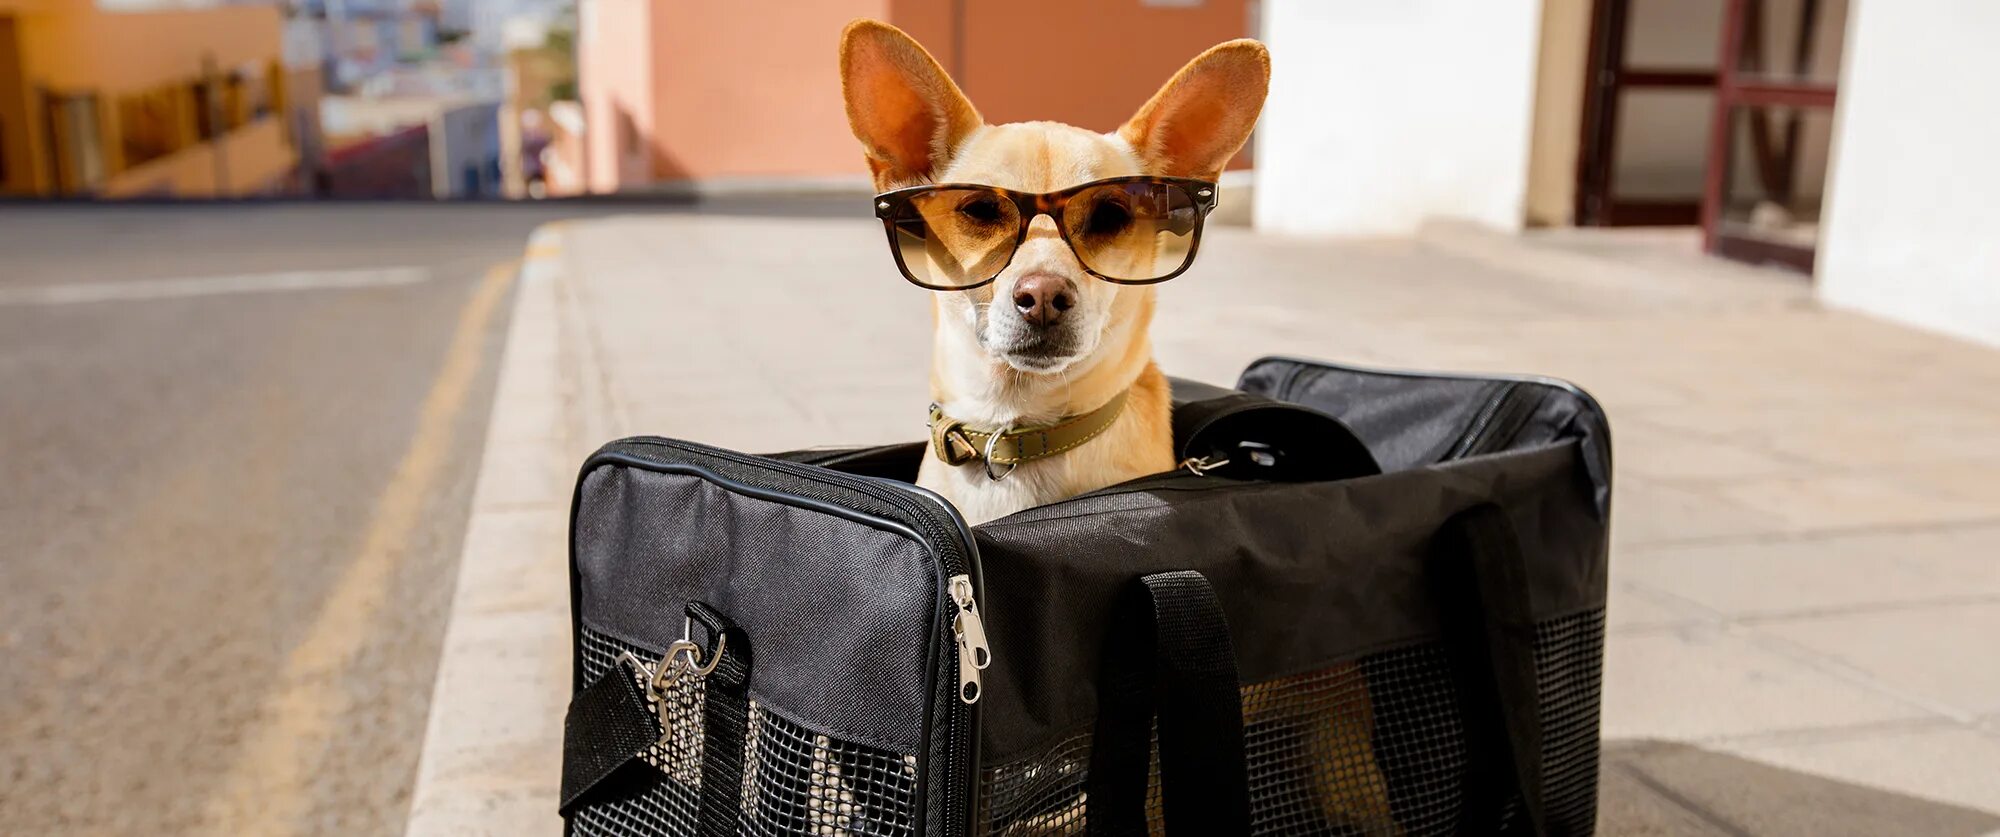 Победа перевозка животных. Собака с чемоданом. Путешествие с животными. Чем заняться на каникулах с собакой.